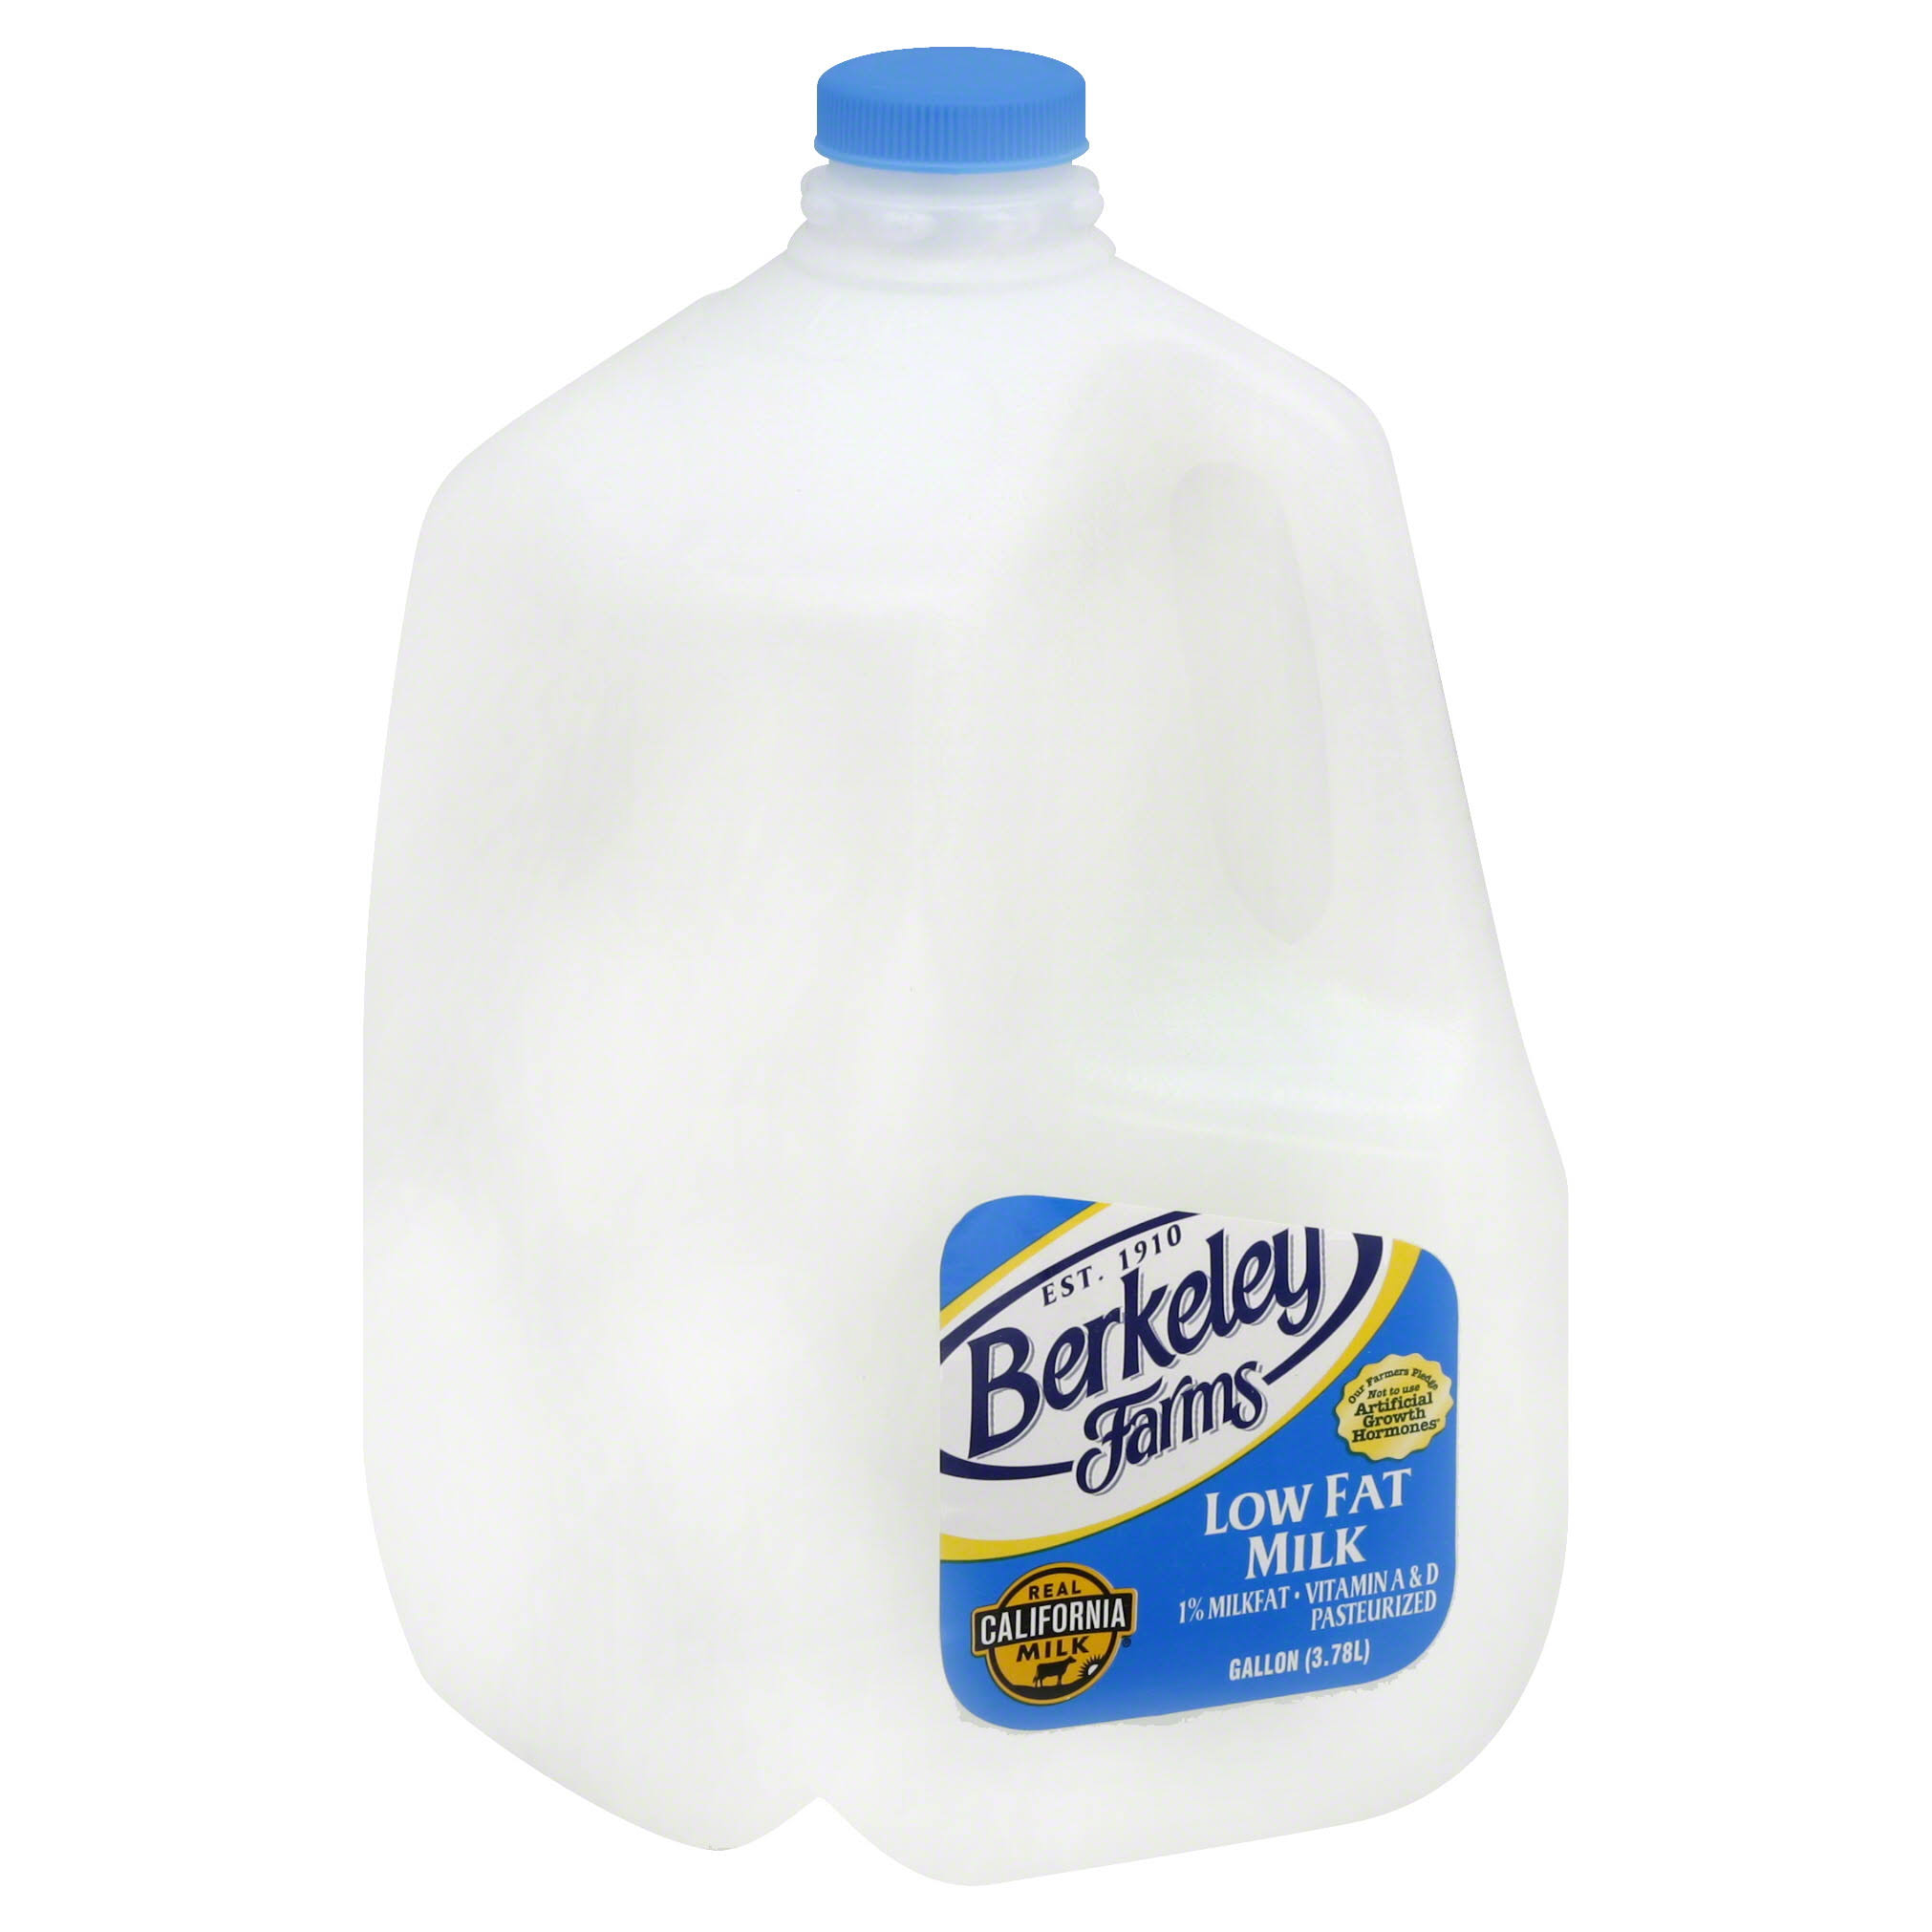 Berkeley Farms Milk, Low Fat, 1% Milkfat - 1 gl (3.78 lt)